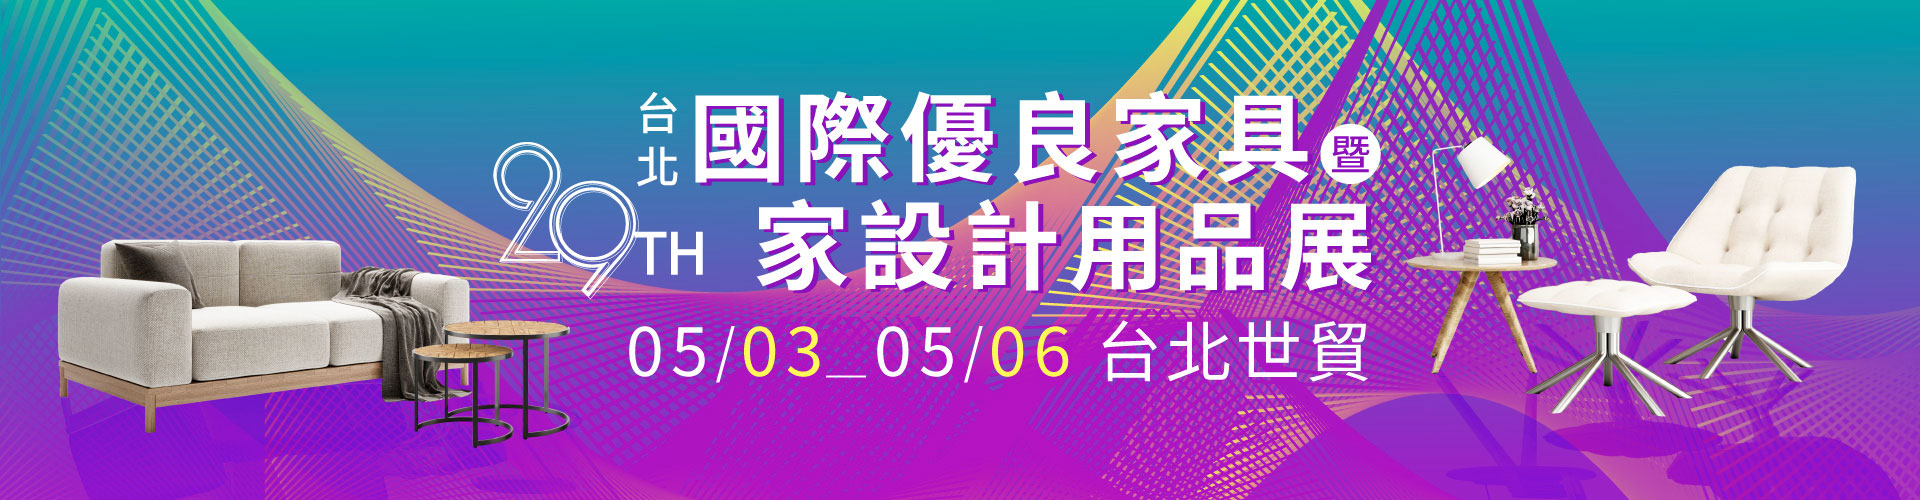 第29屆台北國際優良家具暨家設計用品展